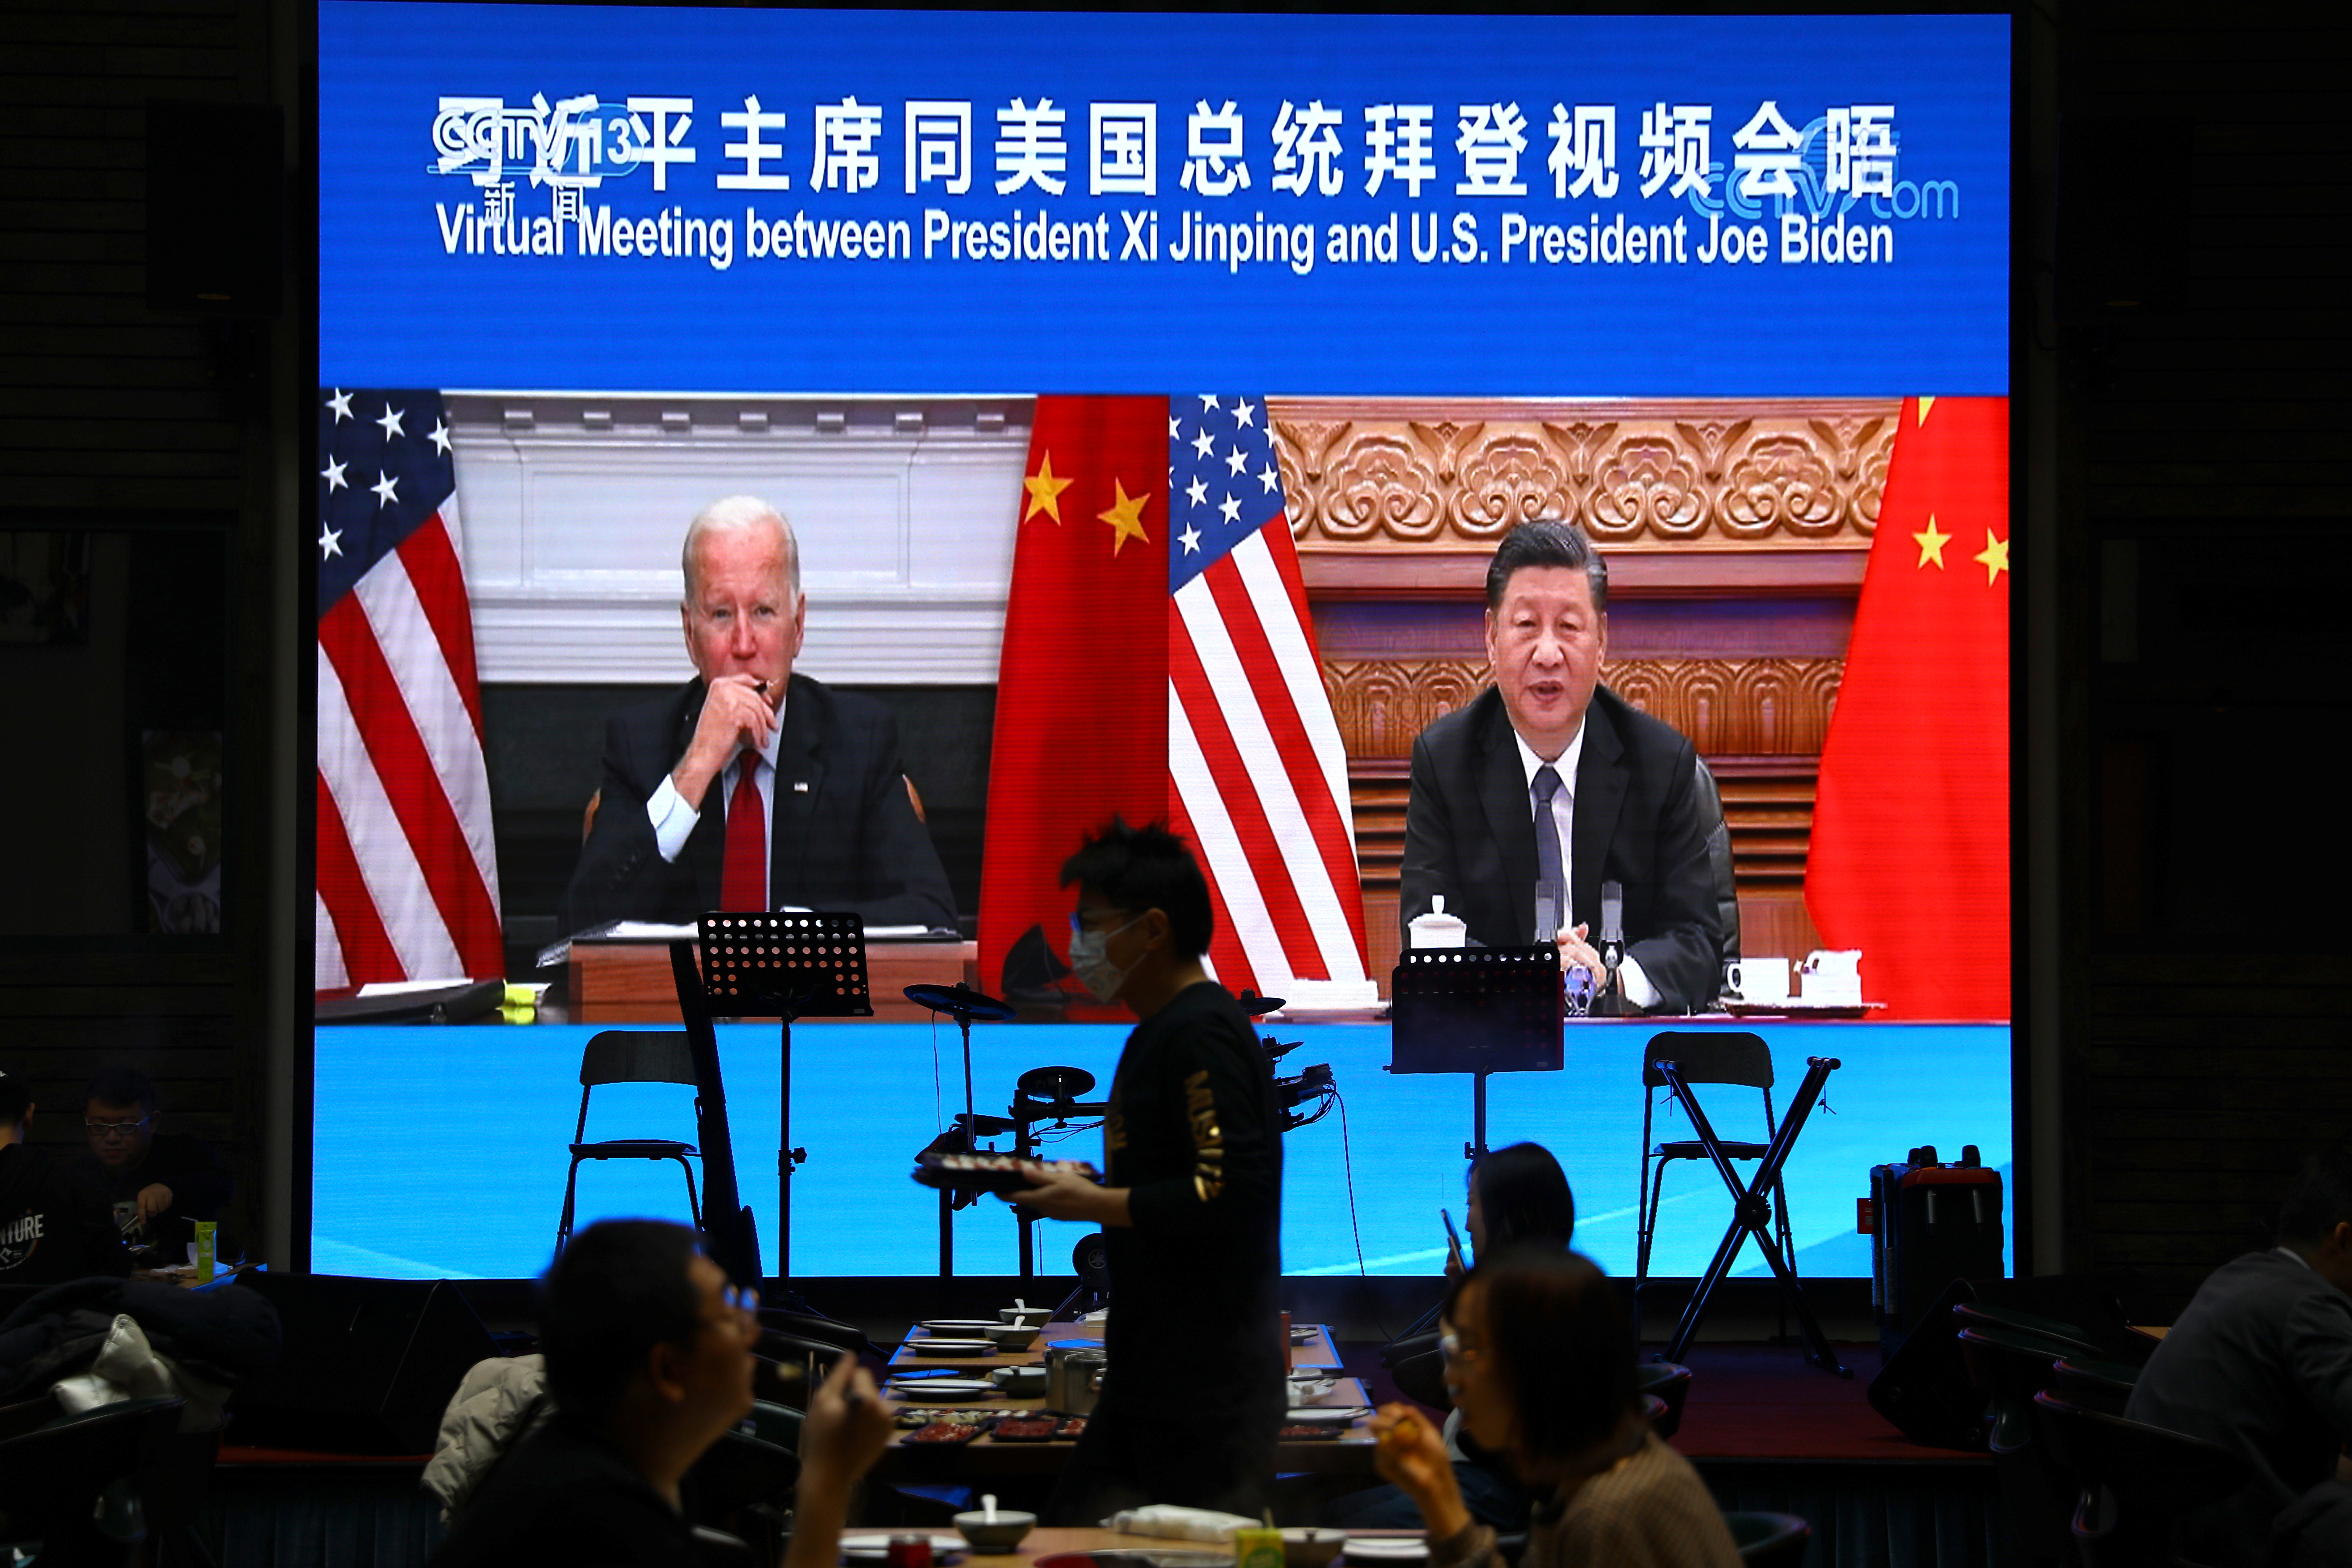 Una pantalla muestra un enlace de video del presidente chino Xi Jinping asistiendo a una reunión virtual con el presidente estadounidense Joe Biden el 16 de noviembre de 2021 en un restaurante en Beijing, China.  REUTERS / Tingshu Wang